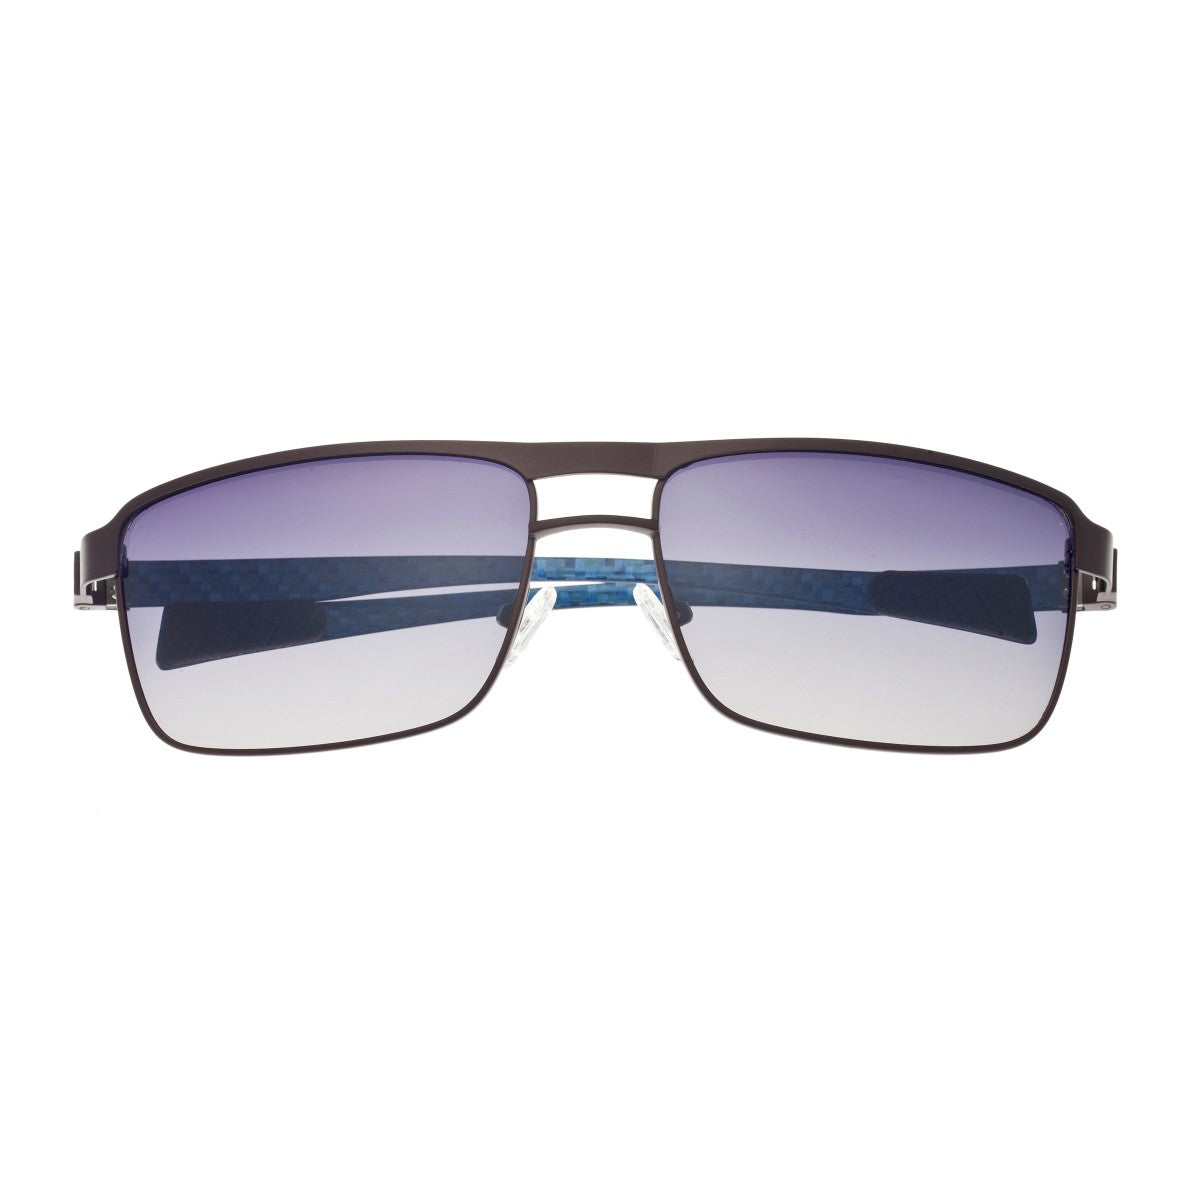 Breed Taurus Titanium and Carbon Fiber Polarized Sunglasses - Brown/Blue - BSG005BN